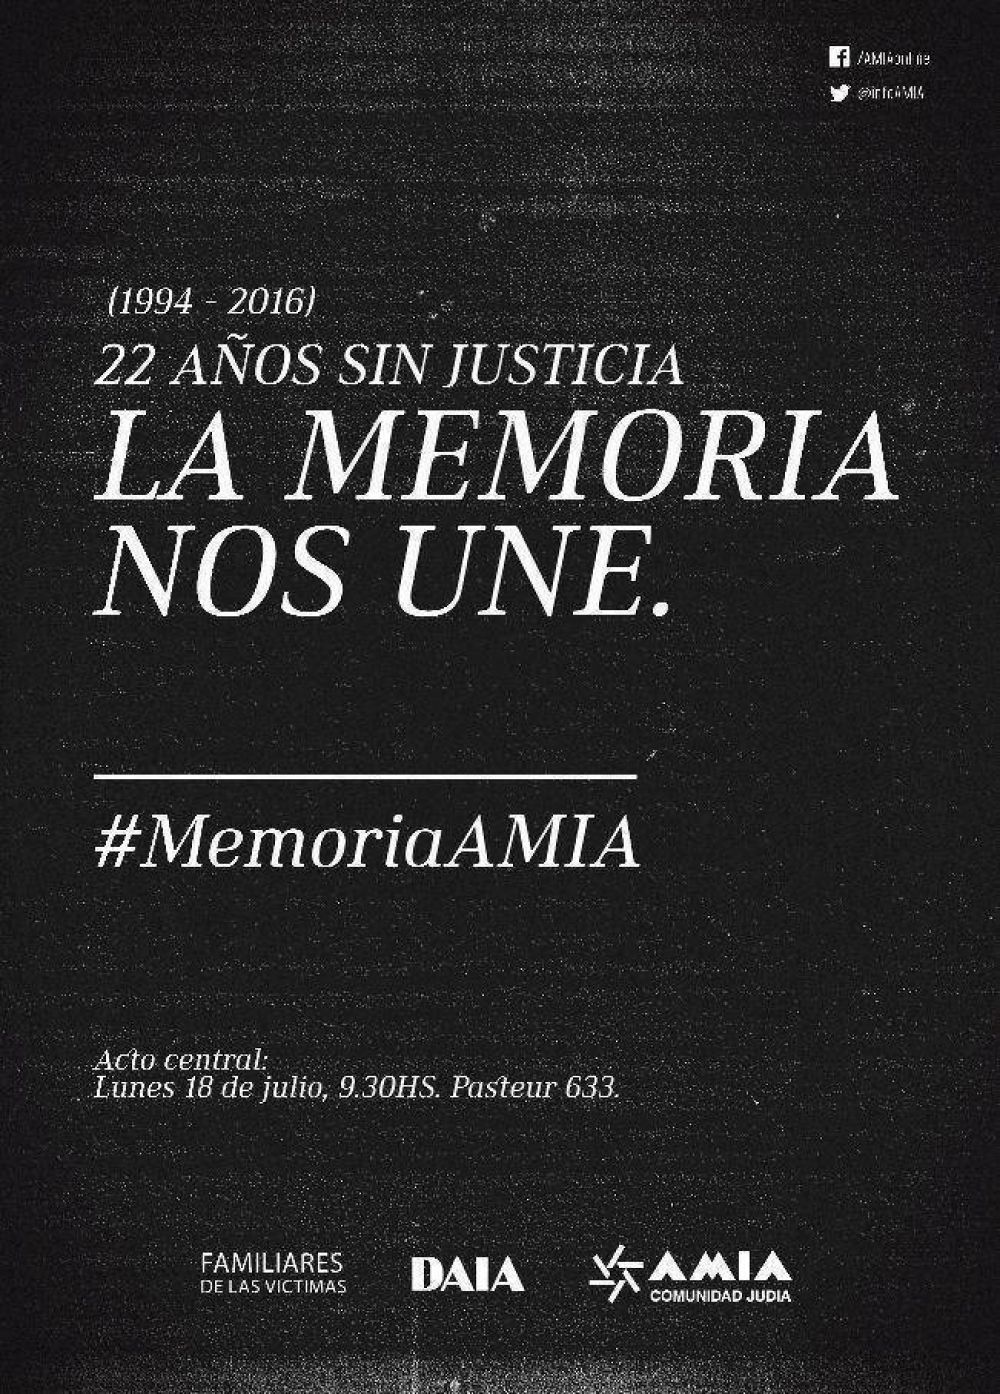 AMIA: A 22 aos del atentado, el acto central en memoria de las vctimas se realizar el prximo lunes frente a Pasteur 633